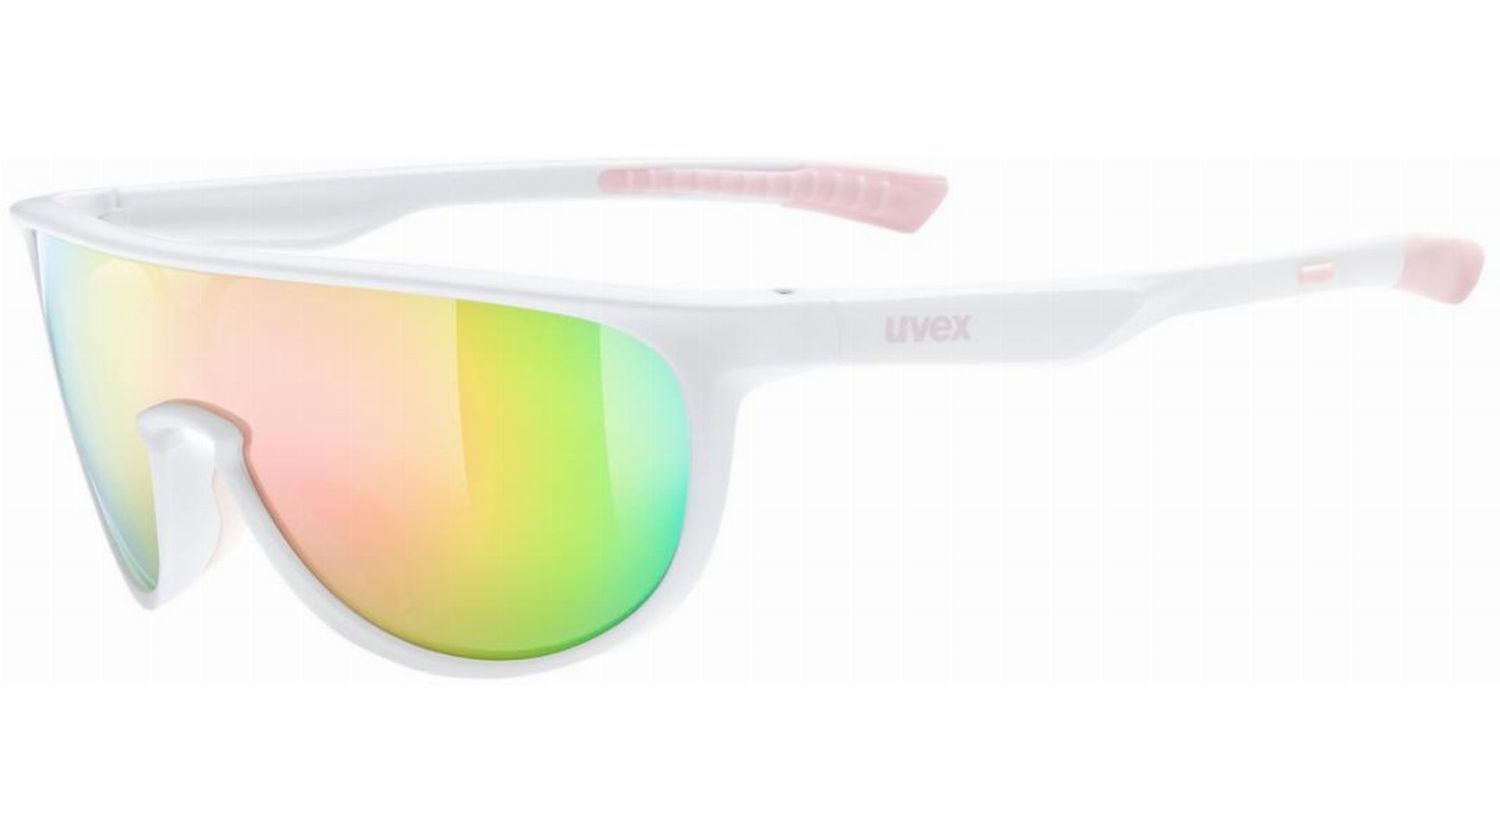 Uvex Sportstyle 515 Kinderbrille white matt/mirror pink